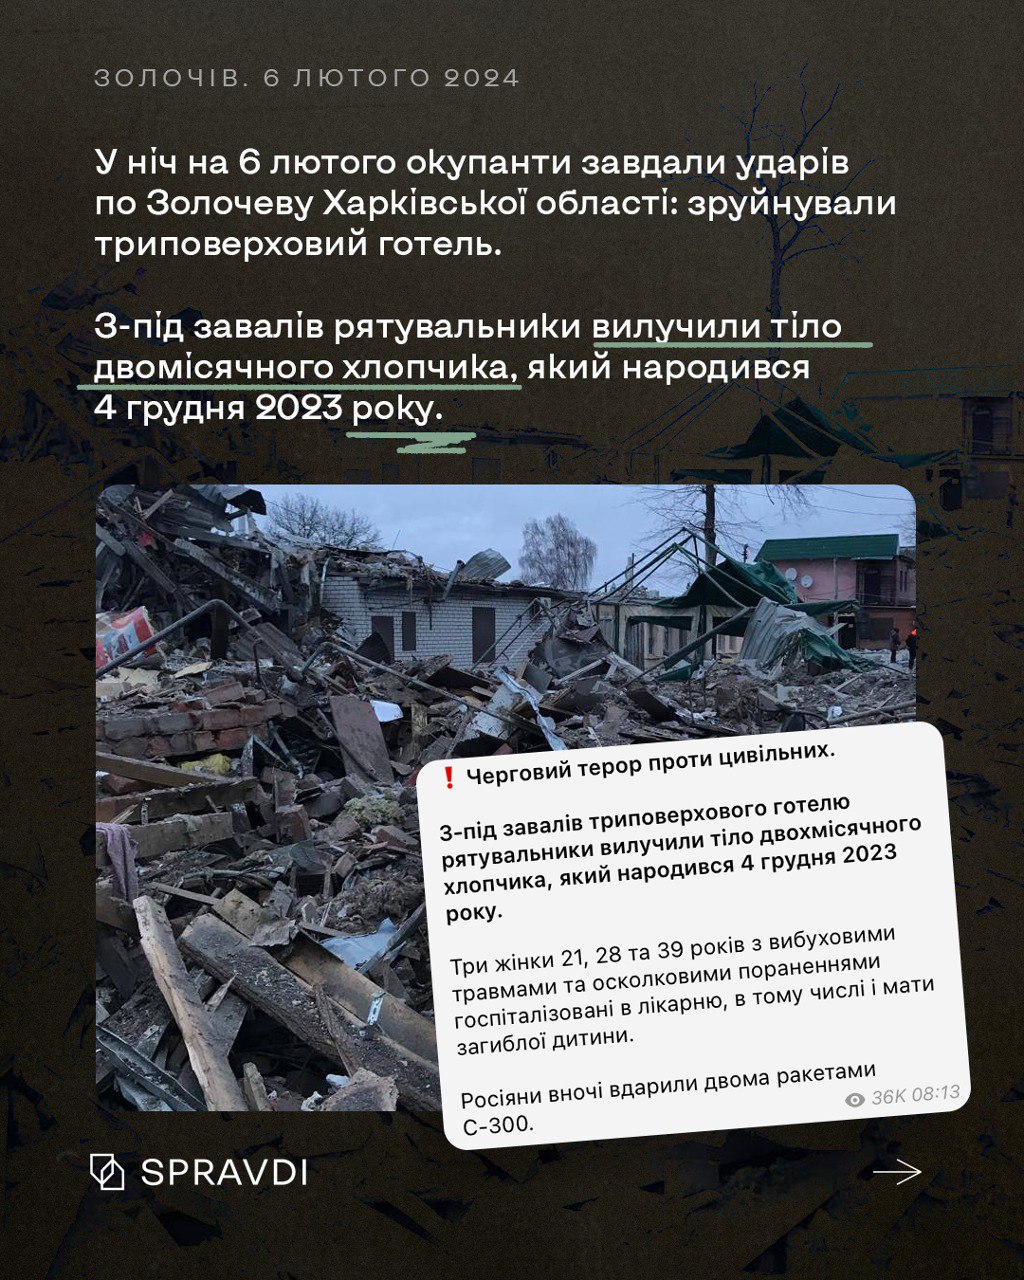 «Військові обєкти», «незграбна ППО» і «пункти управління ЗСУ»: як пропаганда рф бреше про вбивства українських дітей